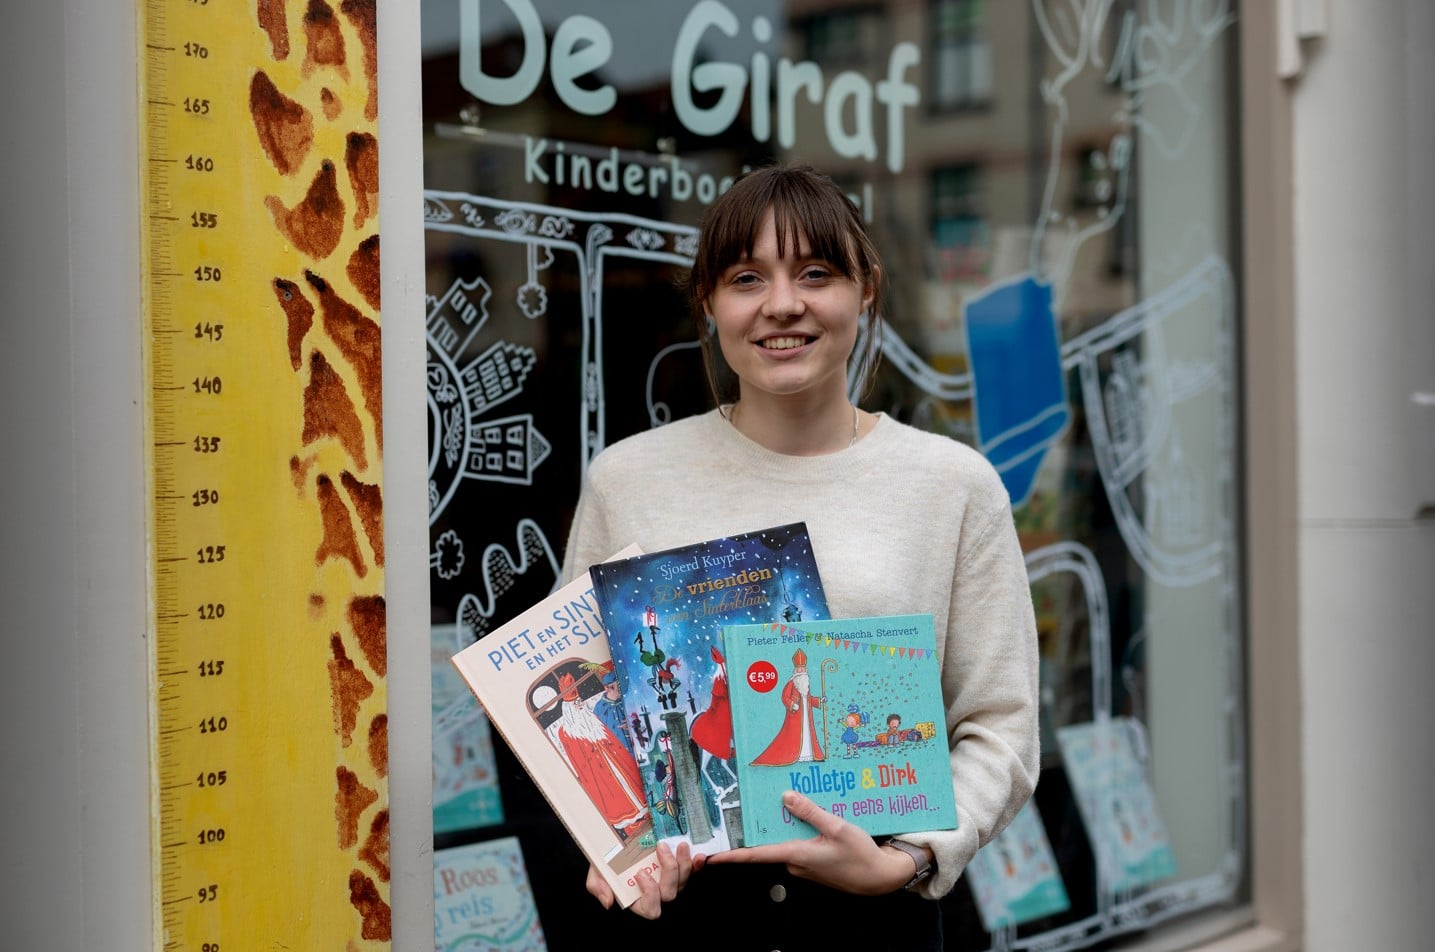 Kinderboekenwinkel de Giraf